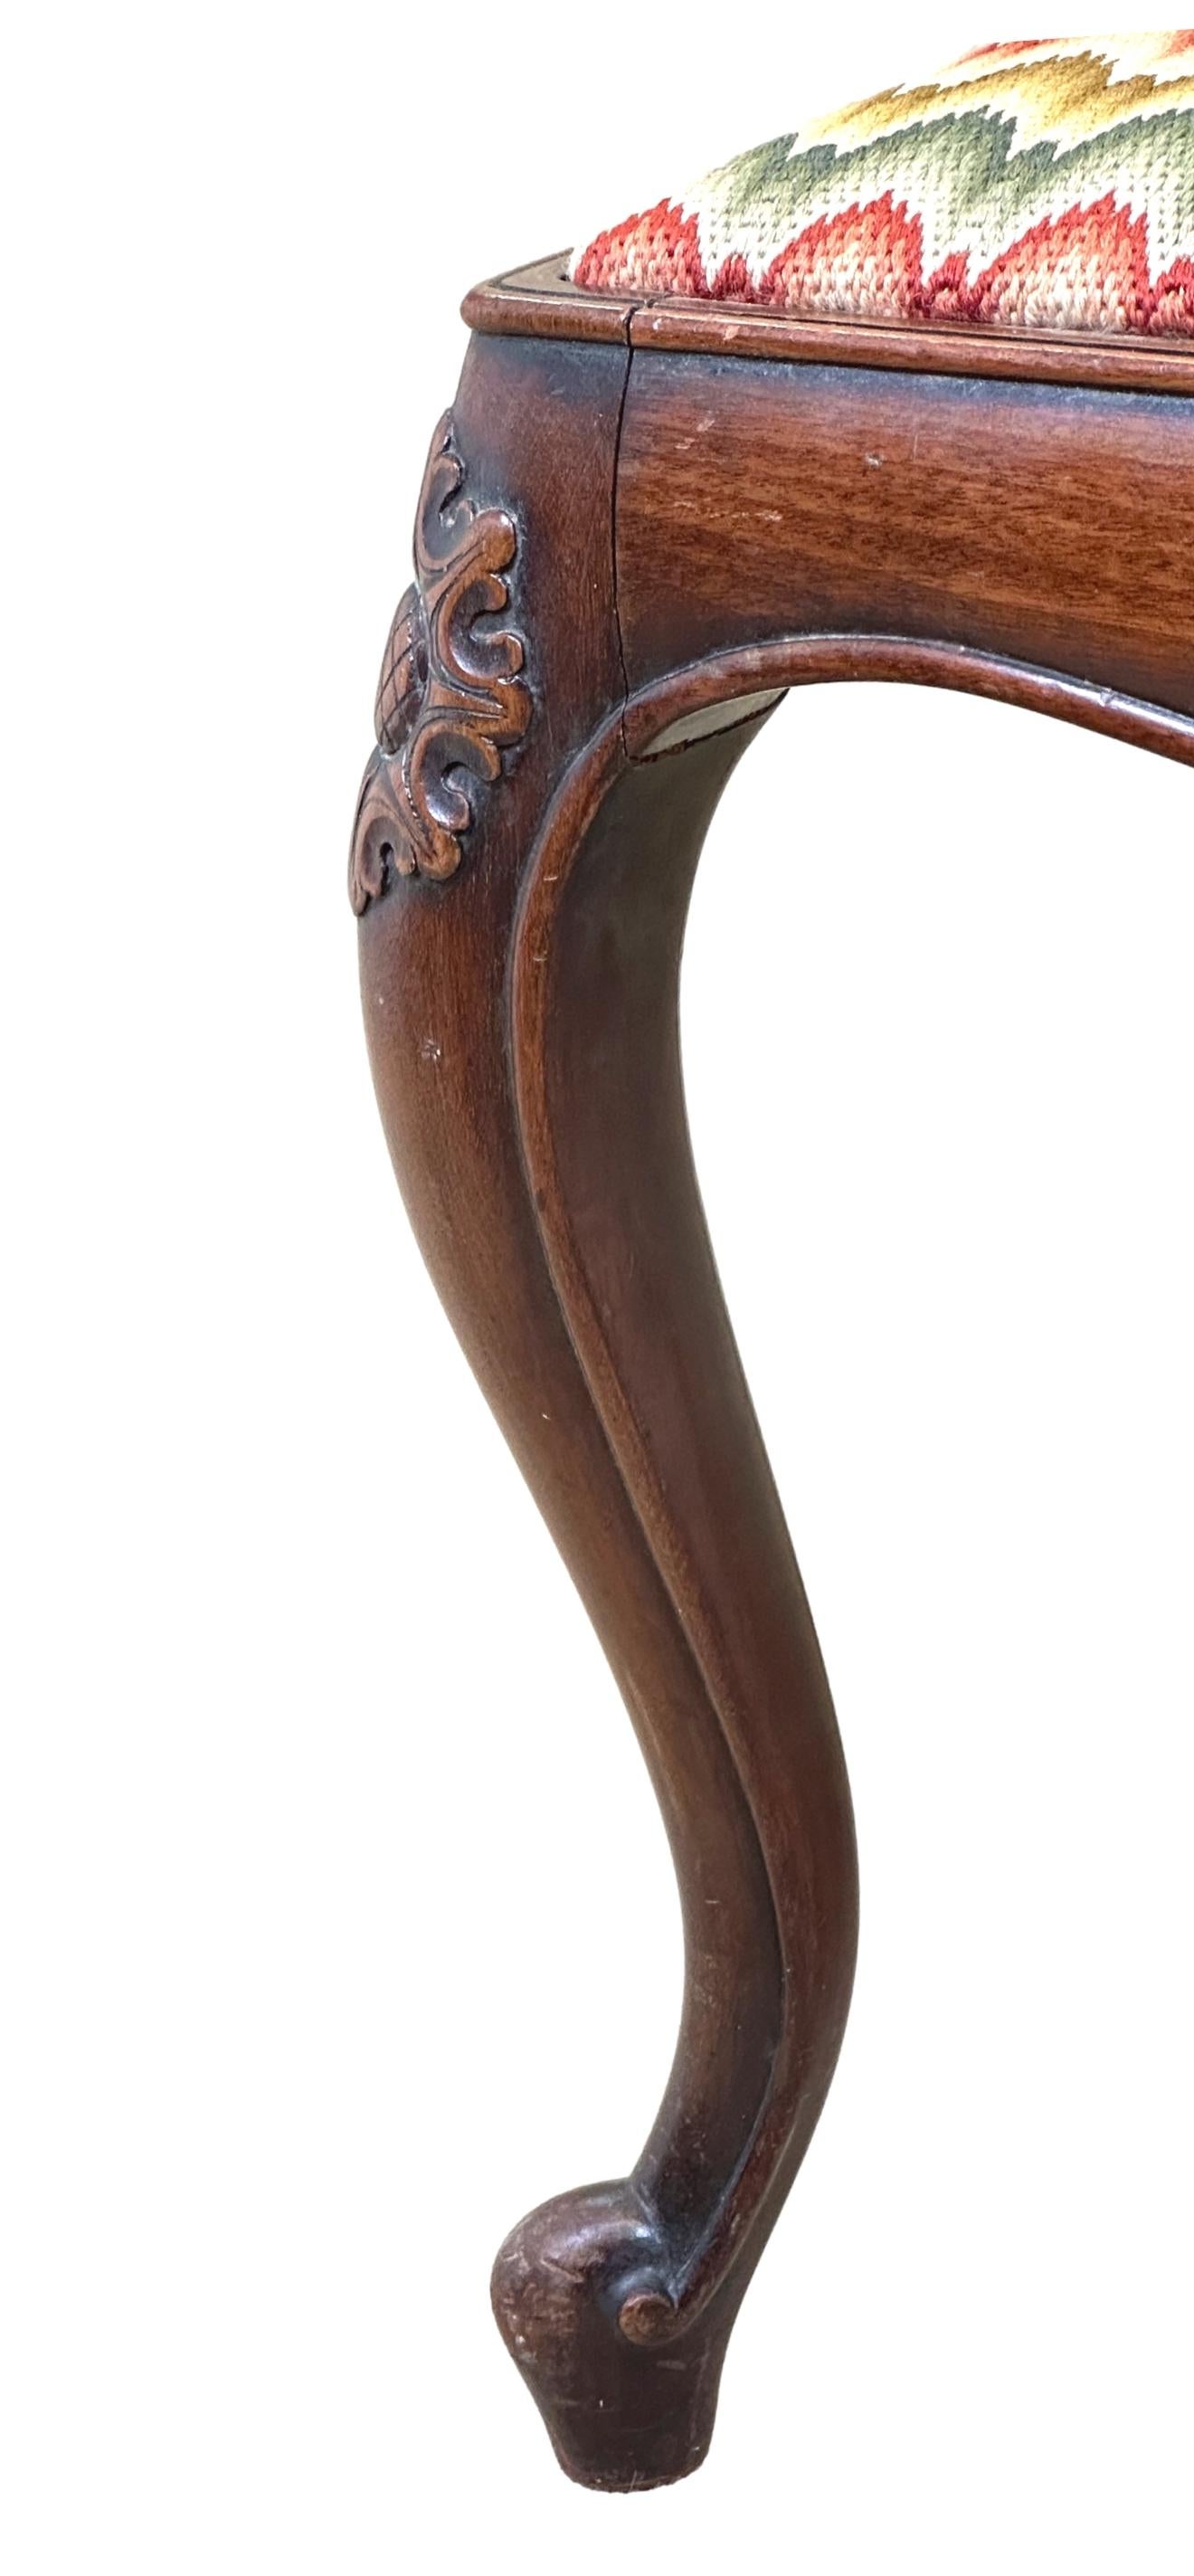 Eine sehr gute Qualität Mitte des 19. Jahrhunderts Mahagoni Hocker, von zierlichen Proportionen, mit attraktiven Handarbeit Drop-in-Sitz, um den Rahmen mit eleganten geschnitzten Dekoration, auf Cabriole Beine erhöht, Beibehaltung gute Farbe und